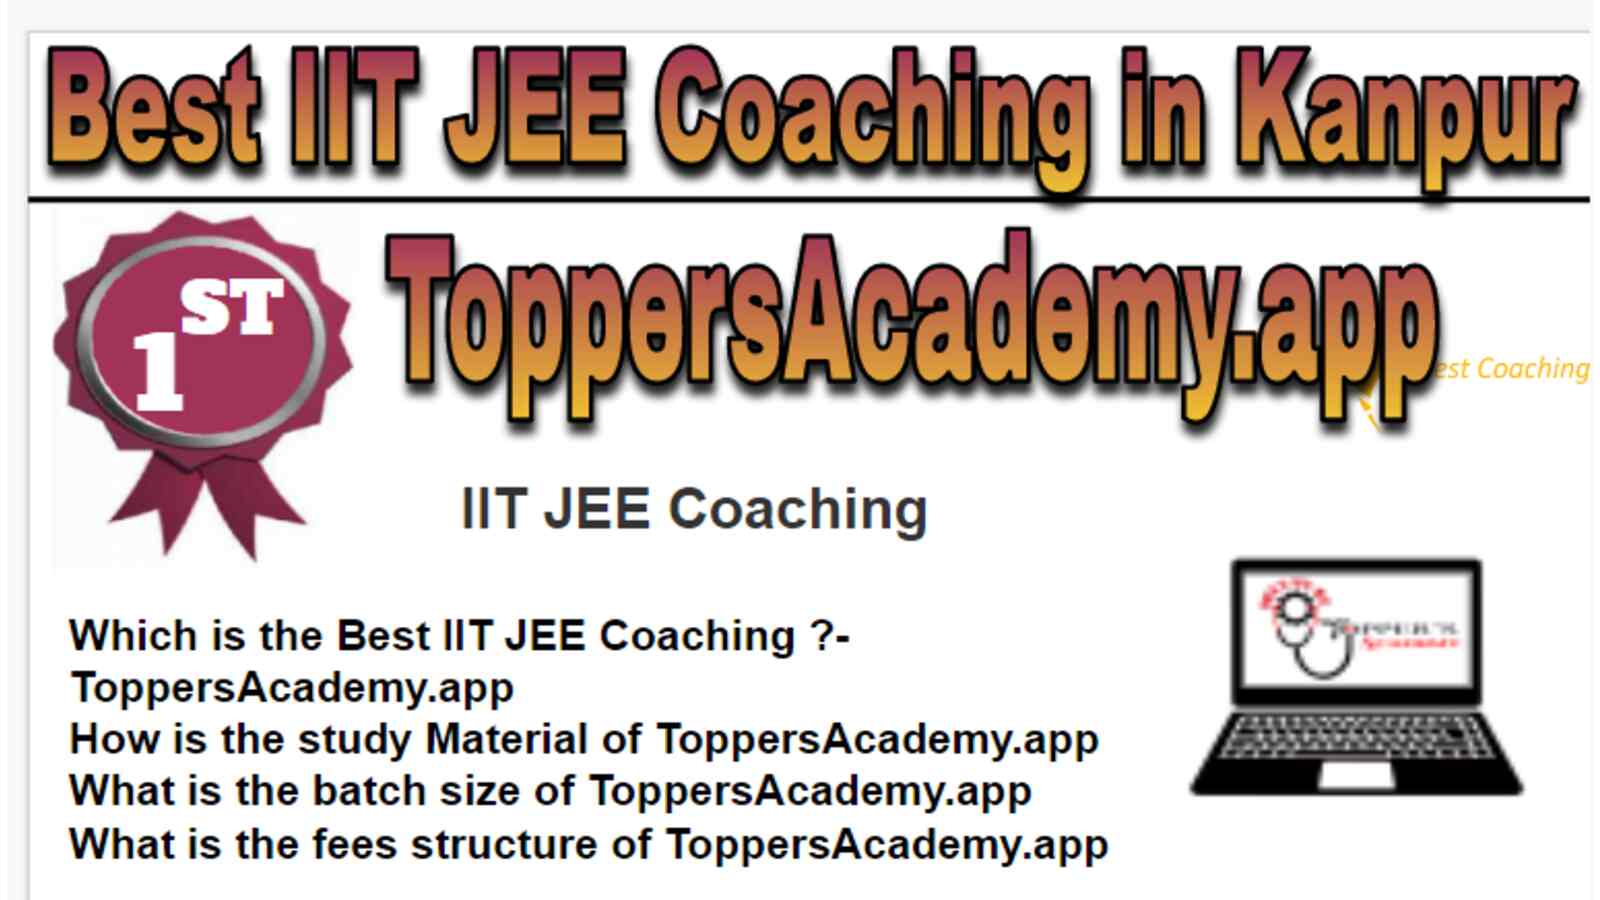 Rank 1 Best IIT JEE Coaching in Kanpur